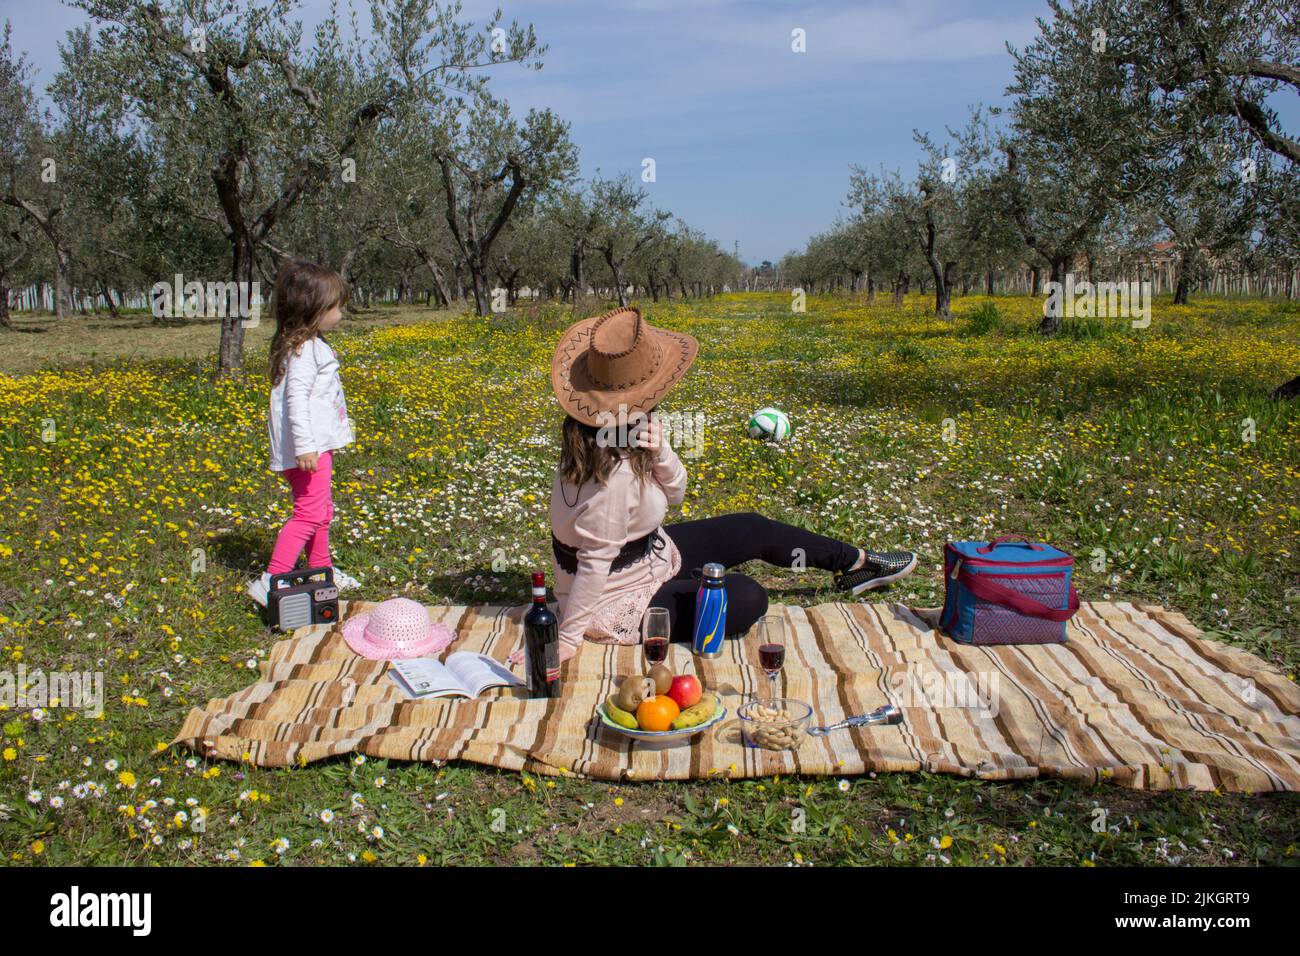 Image d'une mère portant un chapeau de cow-boy avec sa fille dans un champ à la campagne pendant qu'ils jouent sur un pique-nique. Vacances en Toscane Italie Banque D'Images